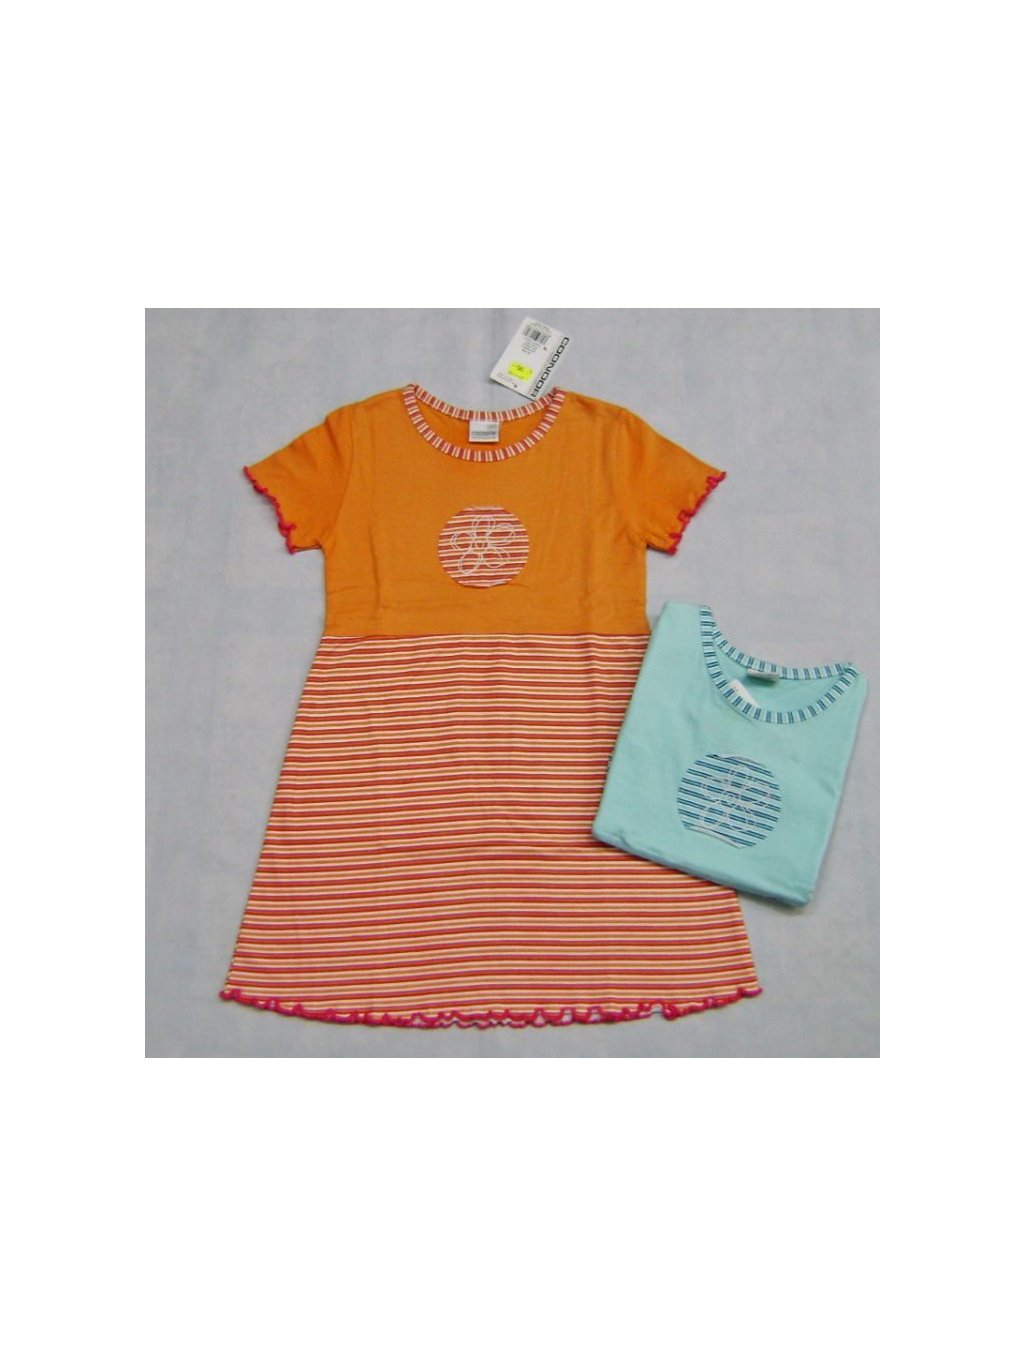 Šaty dětské dívčí (100-120) COONOOR C21-132 oranžová 100 (barva zelená světlá, Velikost vypište do poznámky)